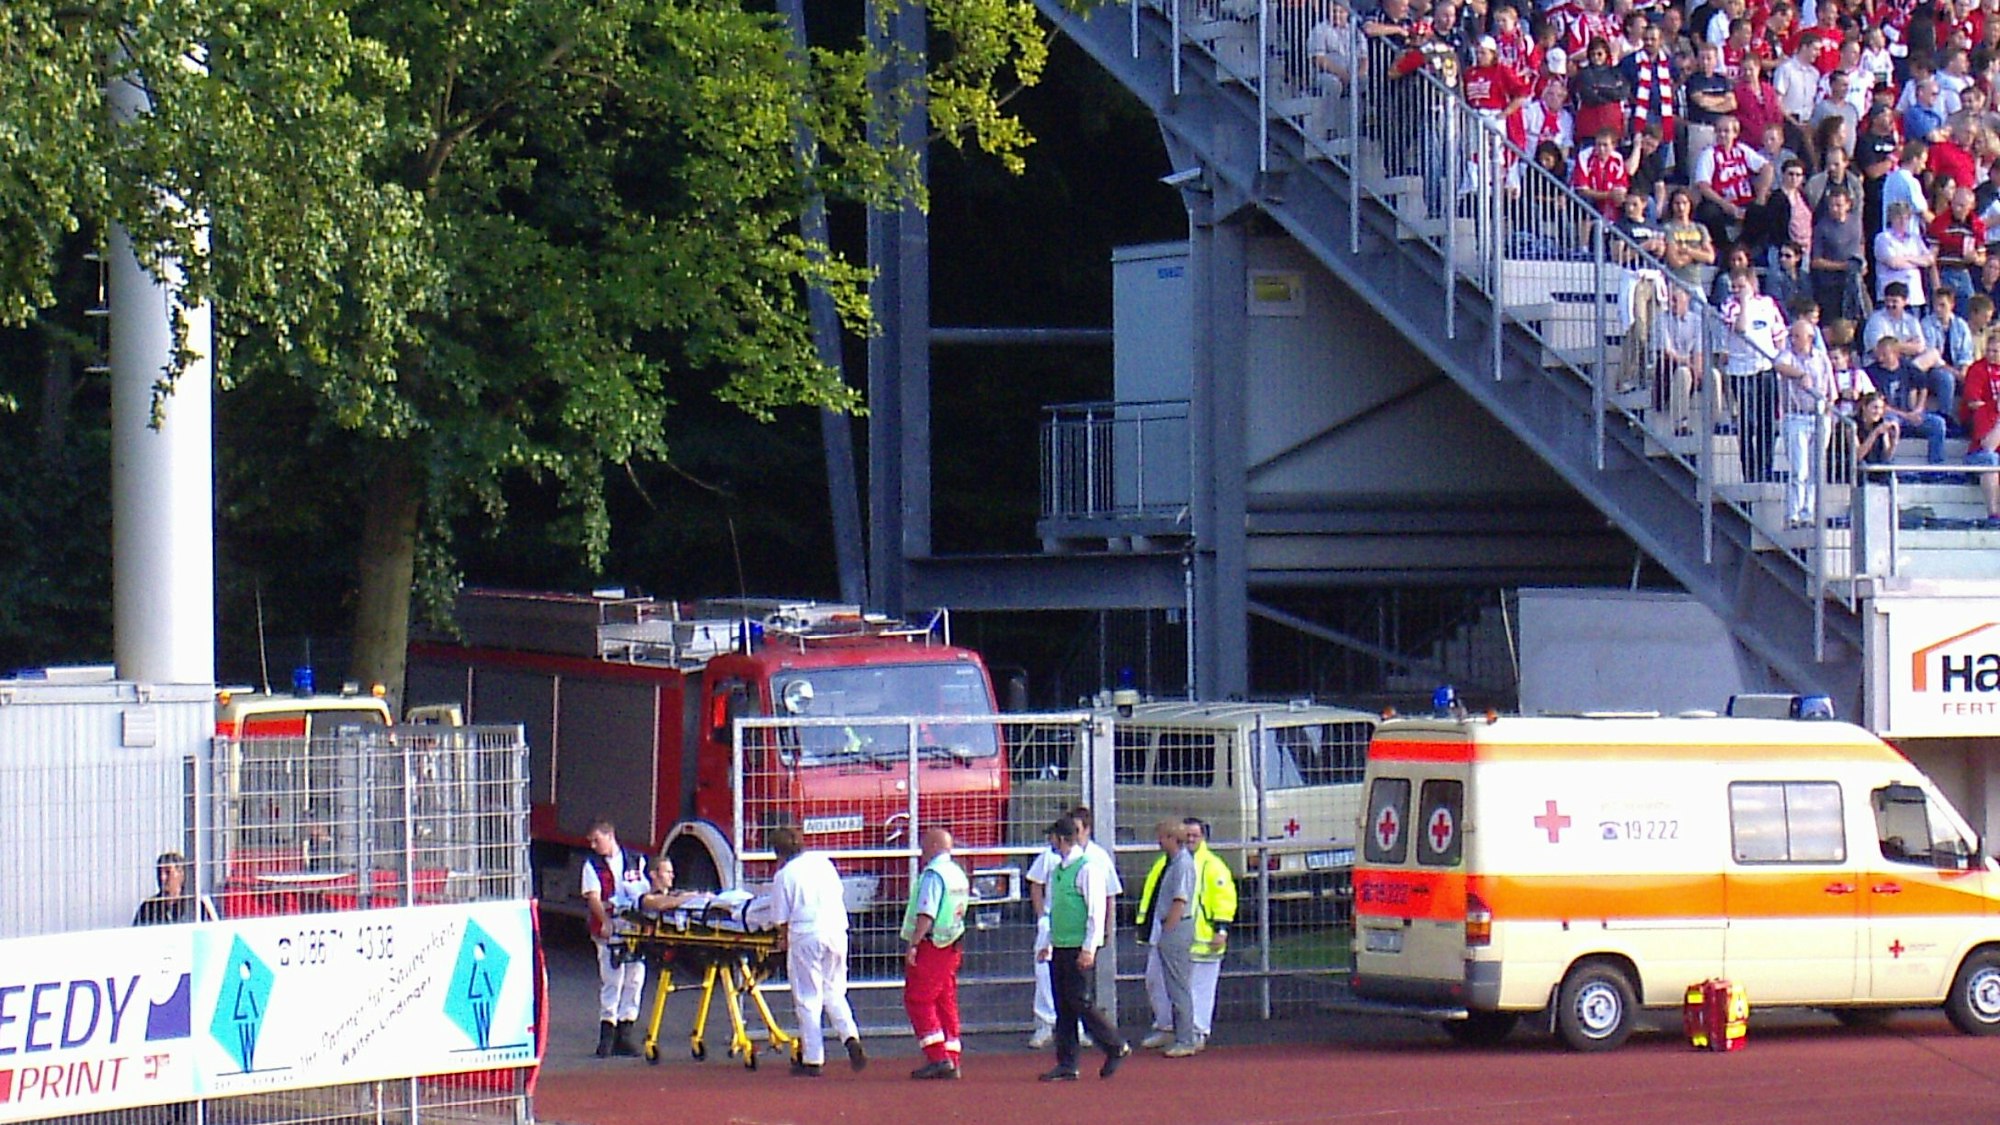 Eine Person wird auf einer Krankentrage aus einem Fußballstadion gefahren. Mehrere Sanitäter begleiten ihn.